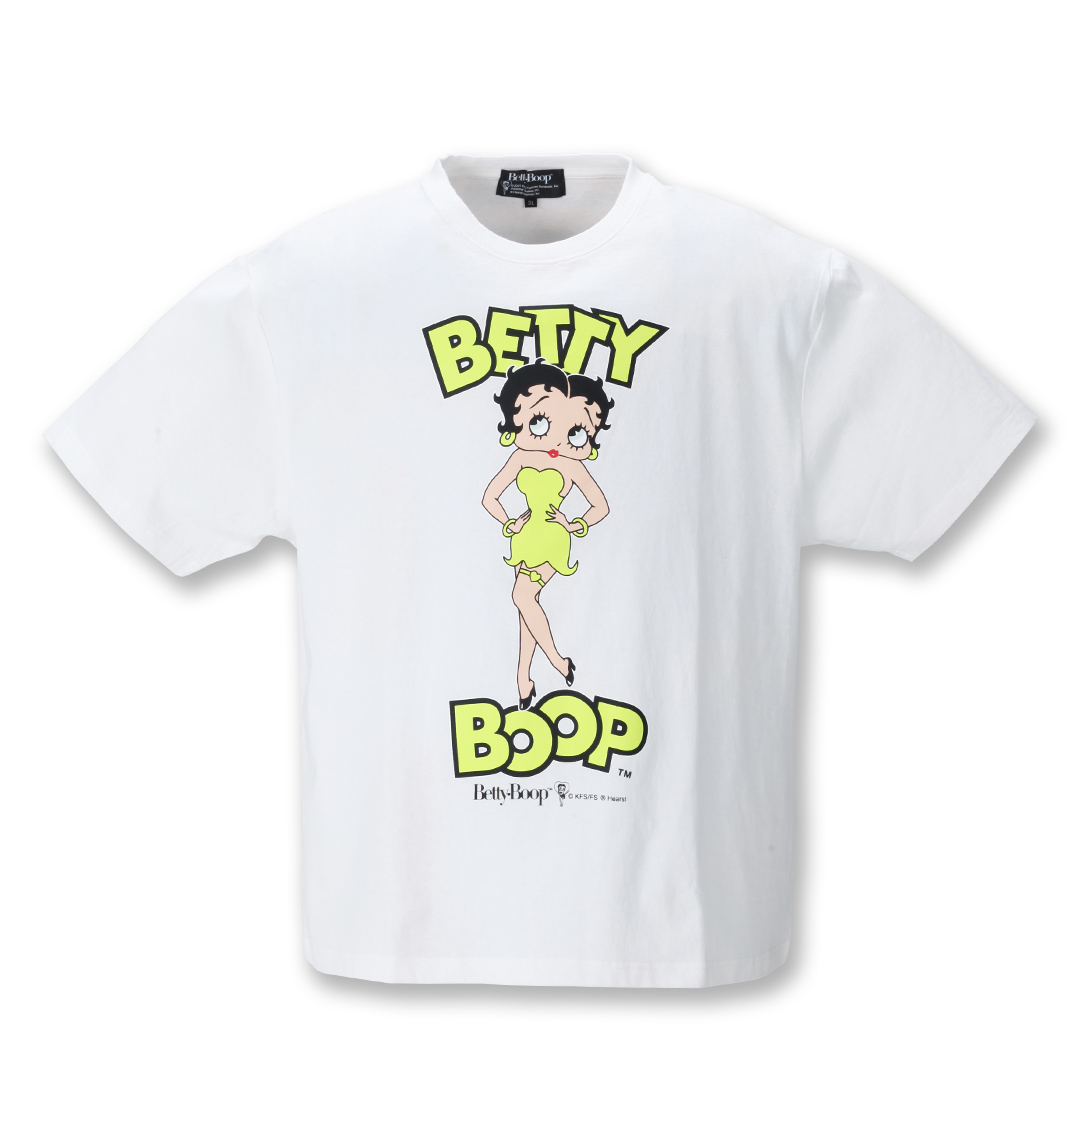 ネオンカラープリント半袖tシャツ Betty Boop ベティ ブープ 大きいサイズのメンズ服通販 ミッド インターナショナル 商品番号1278 1280